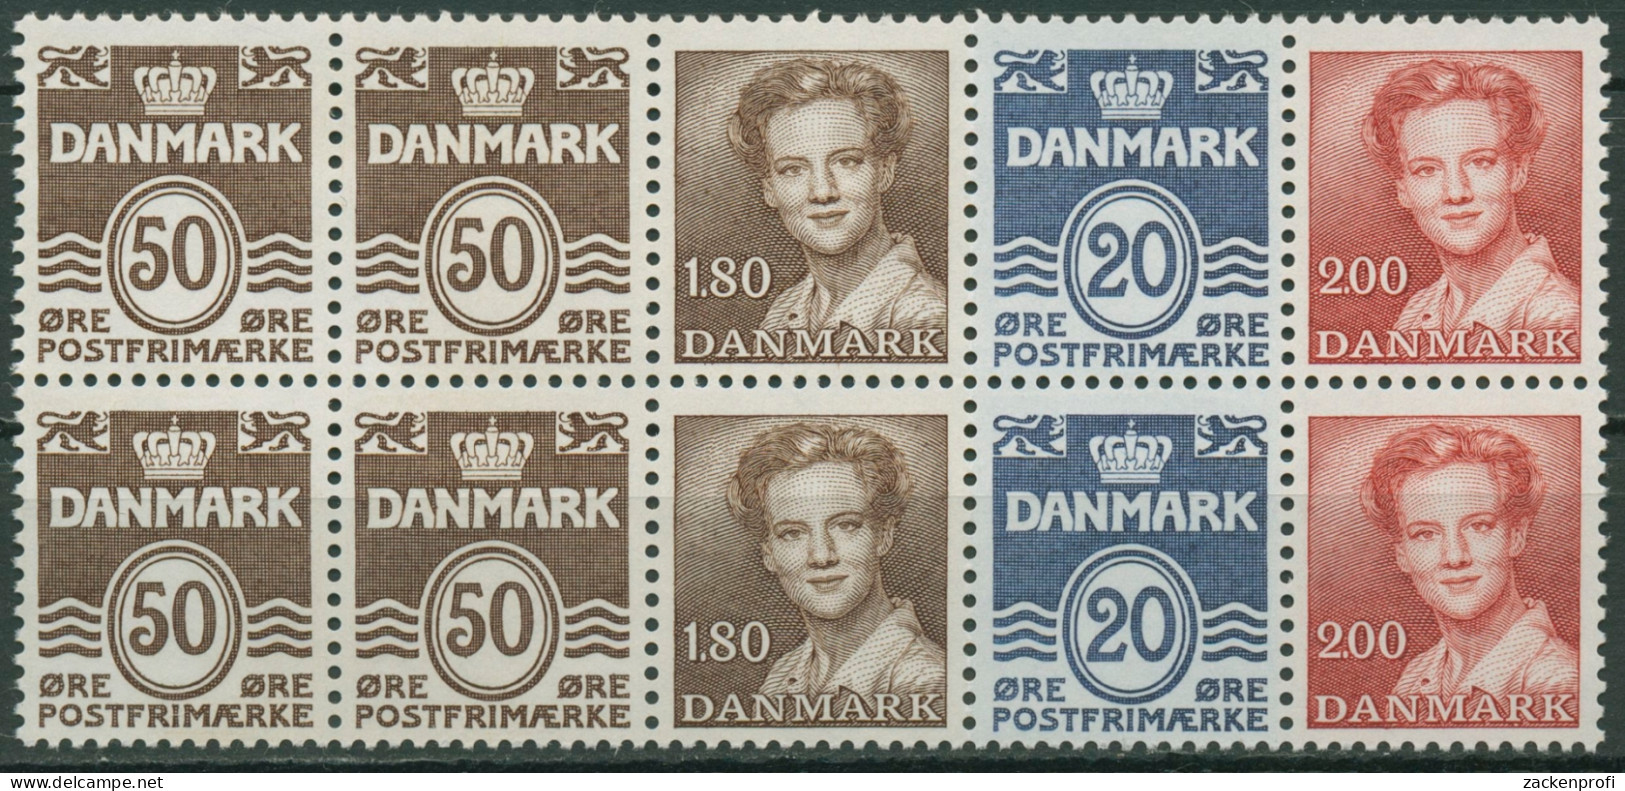 Dänemark 1974 Markenheftchenblatt H-Bl. 19 Postfrisch (C96552) - Cuadernillos